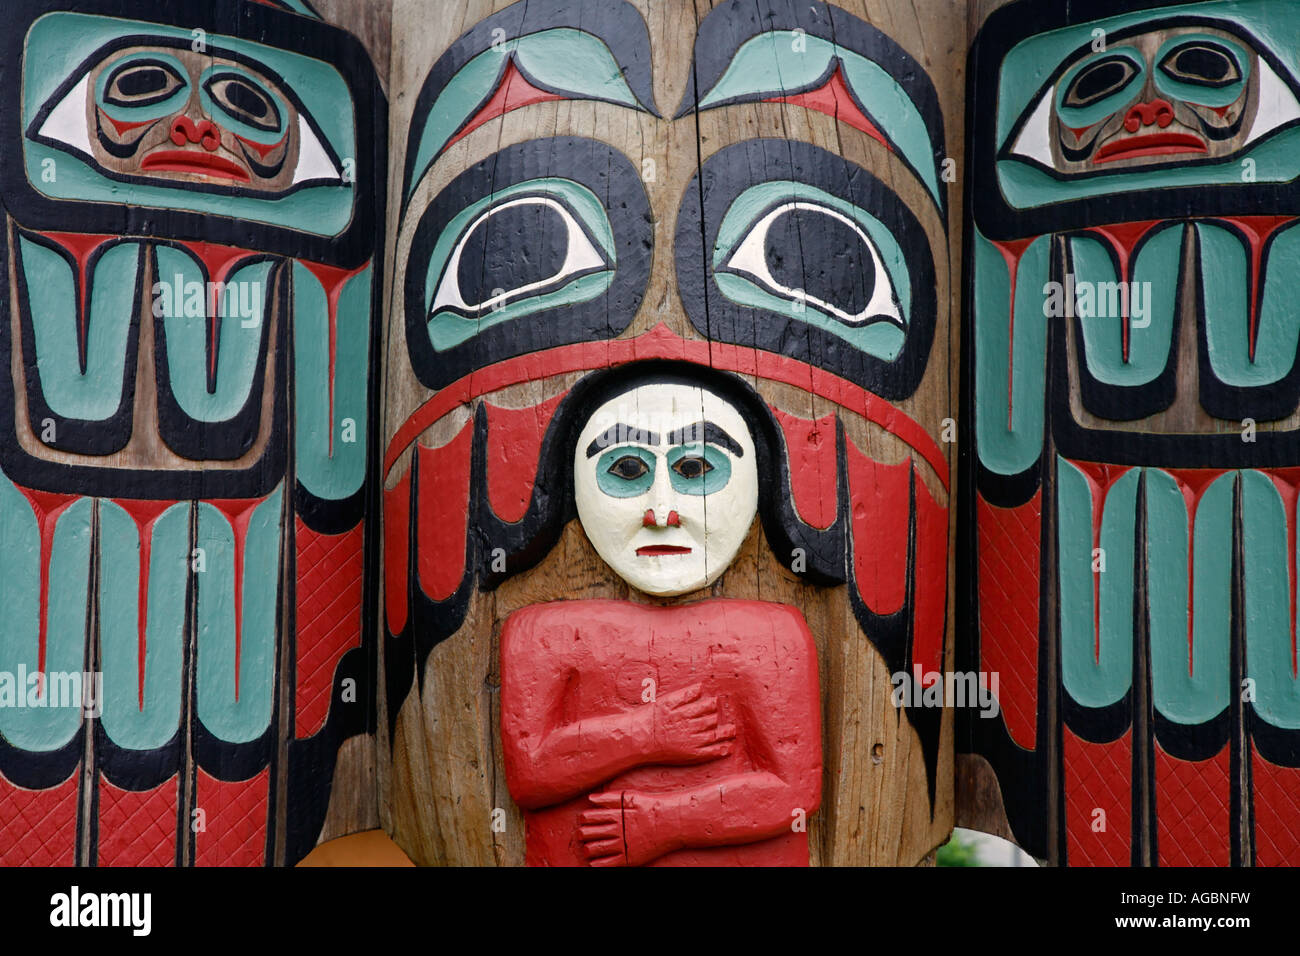 Saxman Totem Park Ketchikan Alaska Stock Photo - Alamy